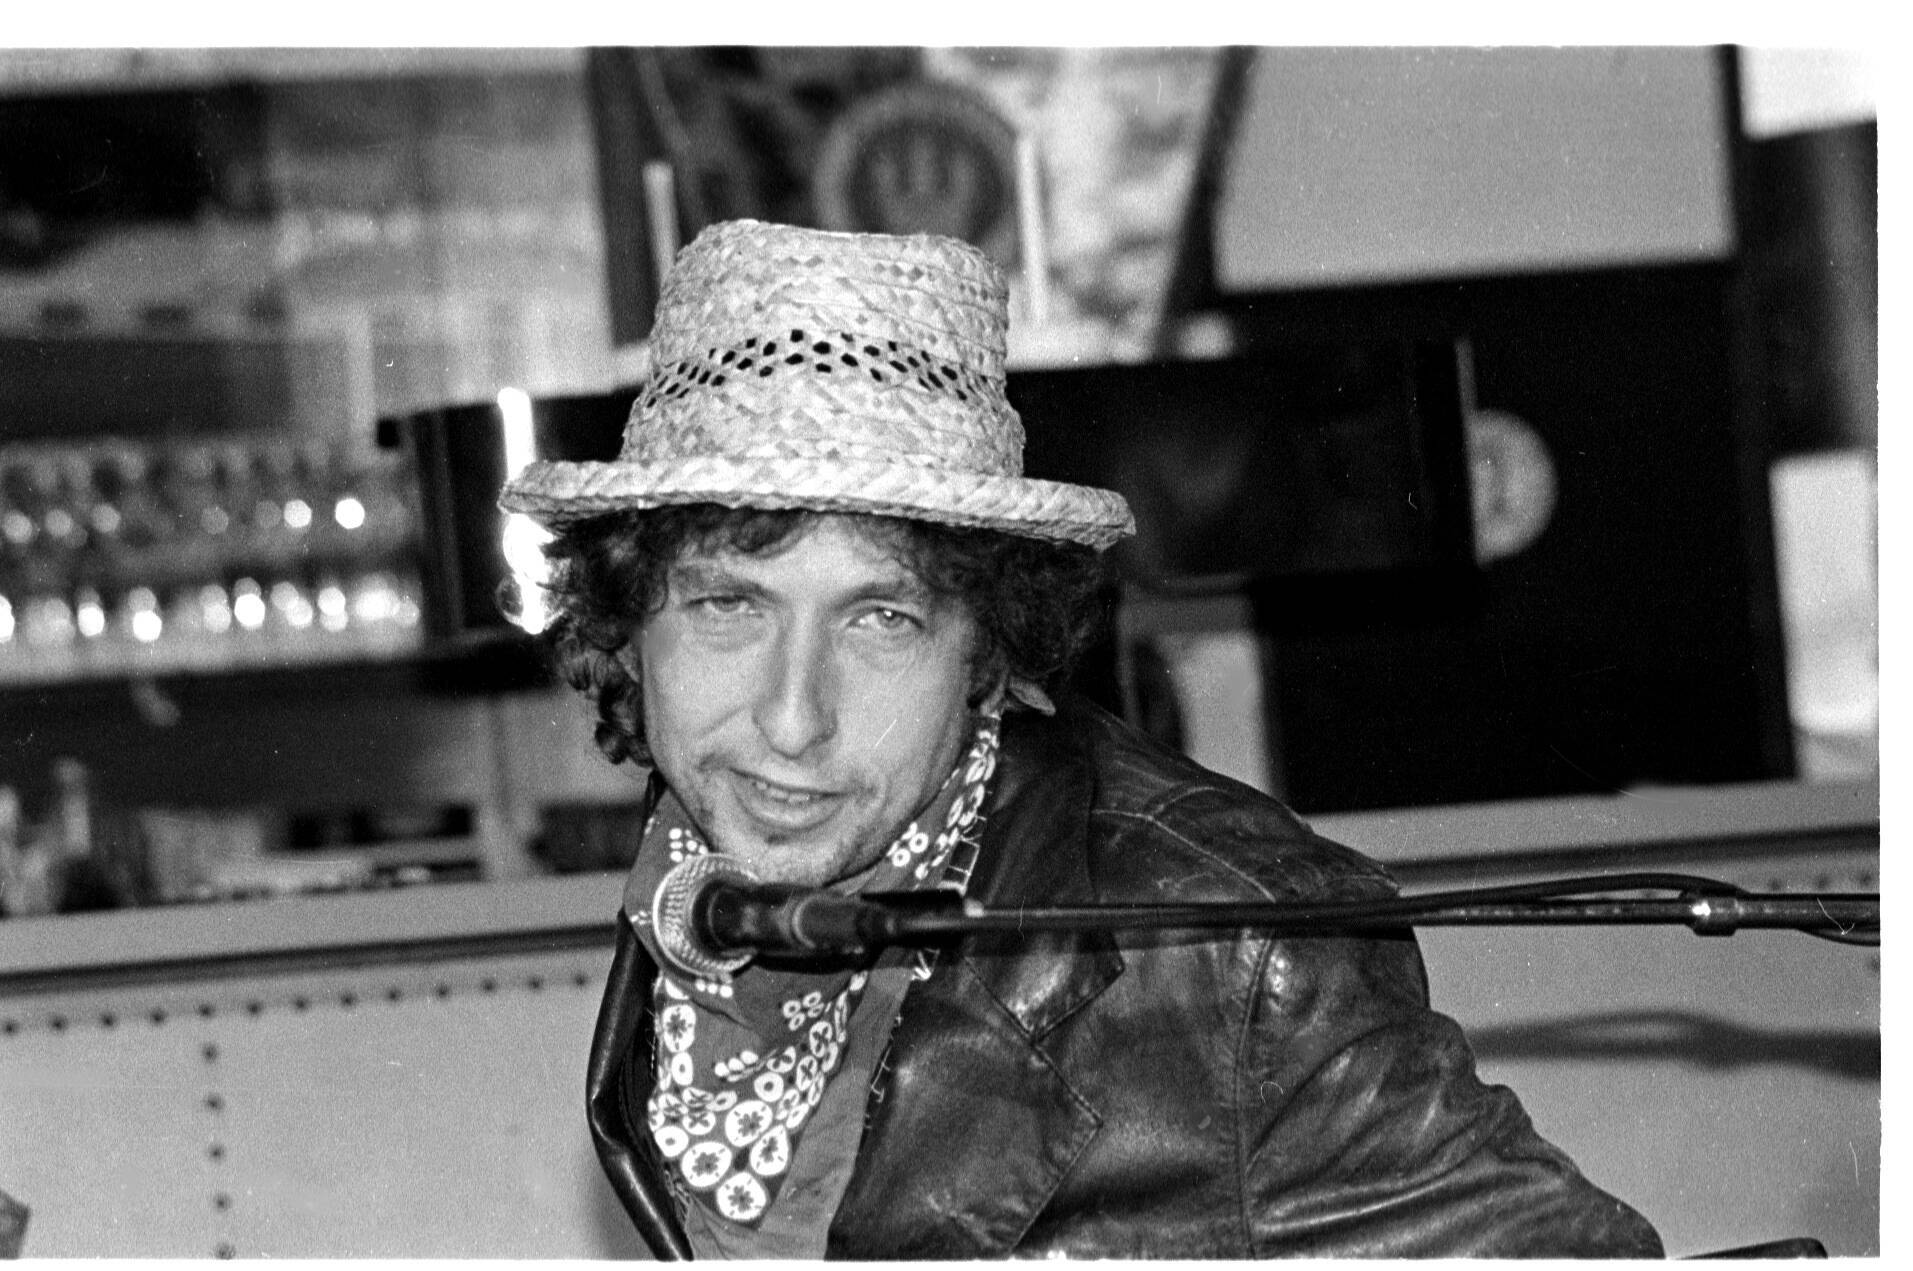 Bob Dylan bei einer Pressekonferenz im Juli 1987, wenige Wochen später spielte er in Berlin vor gut 100.000 Zuschauern live im Treptower Park. Foto: Imago/Brigani-Art